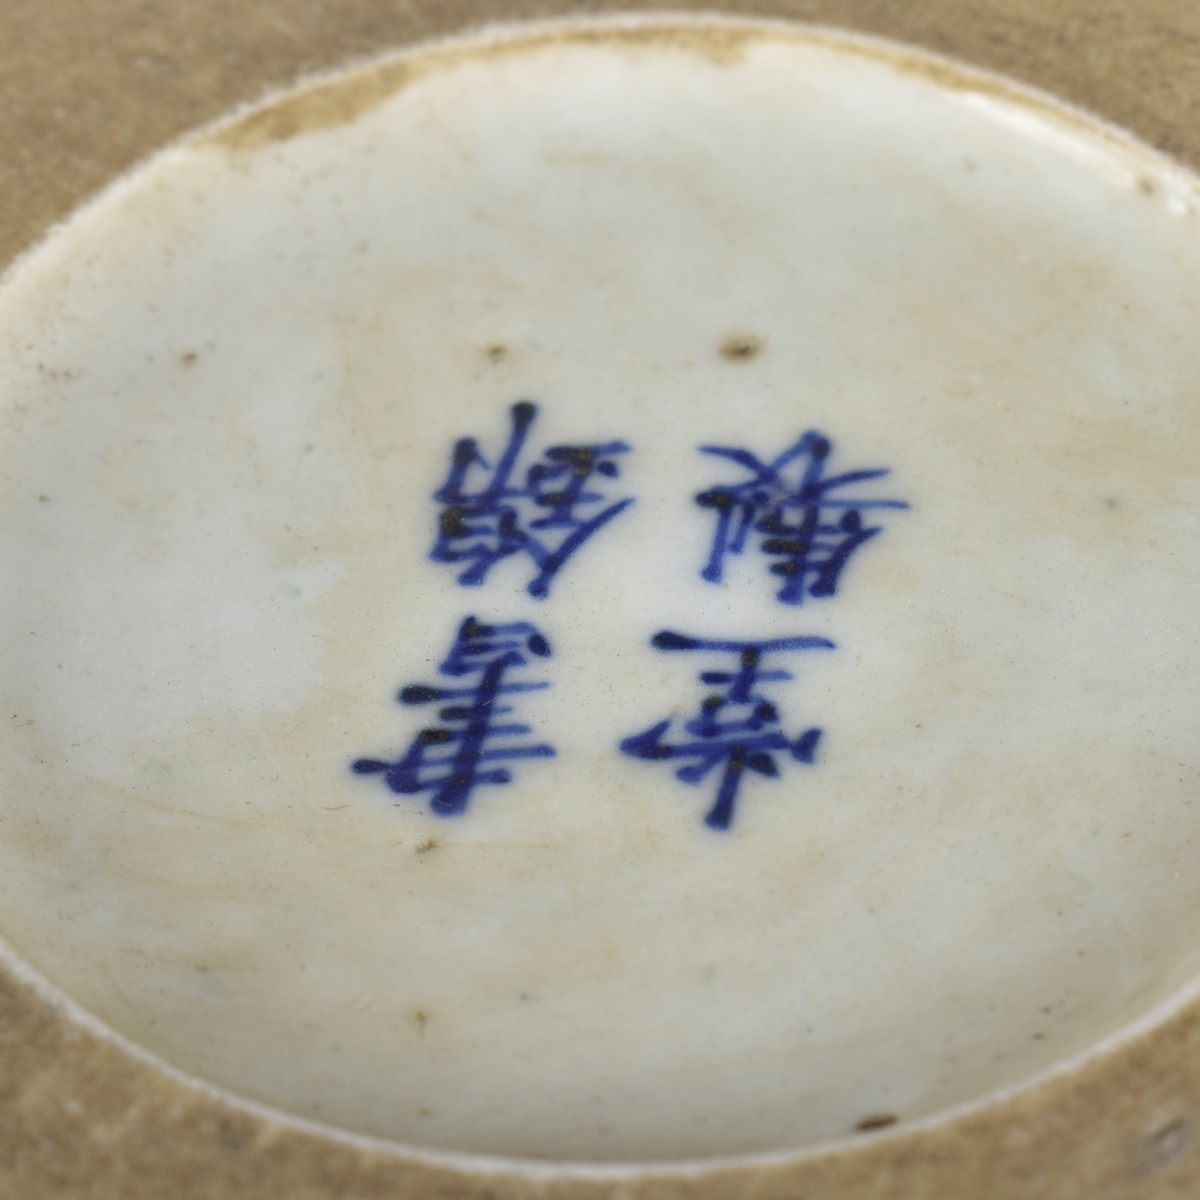 Large Chinese Porcelain Brush Pot